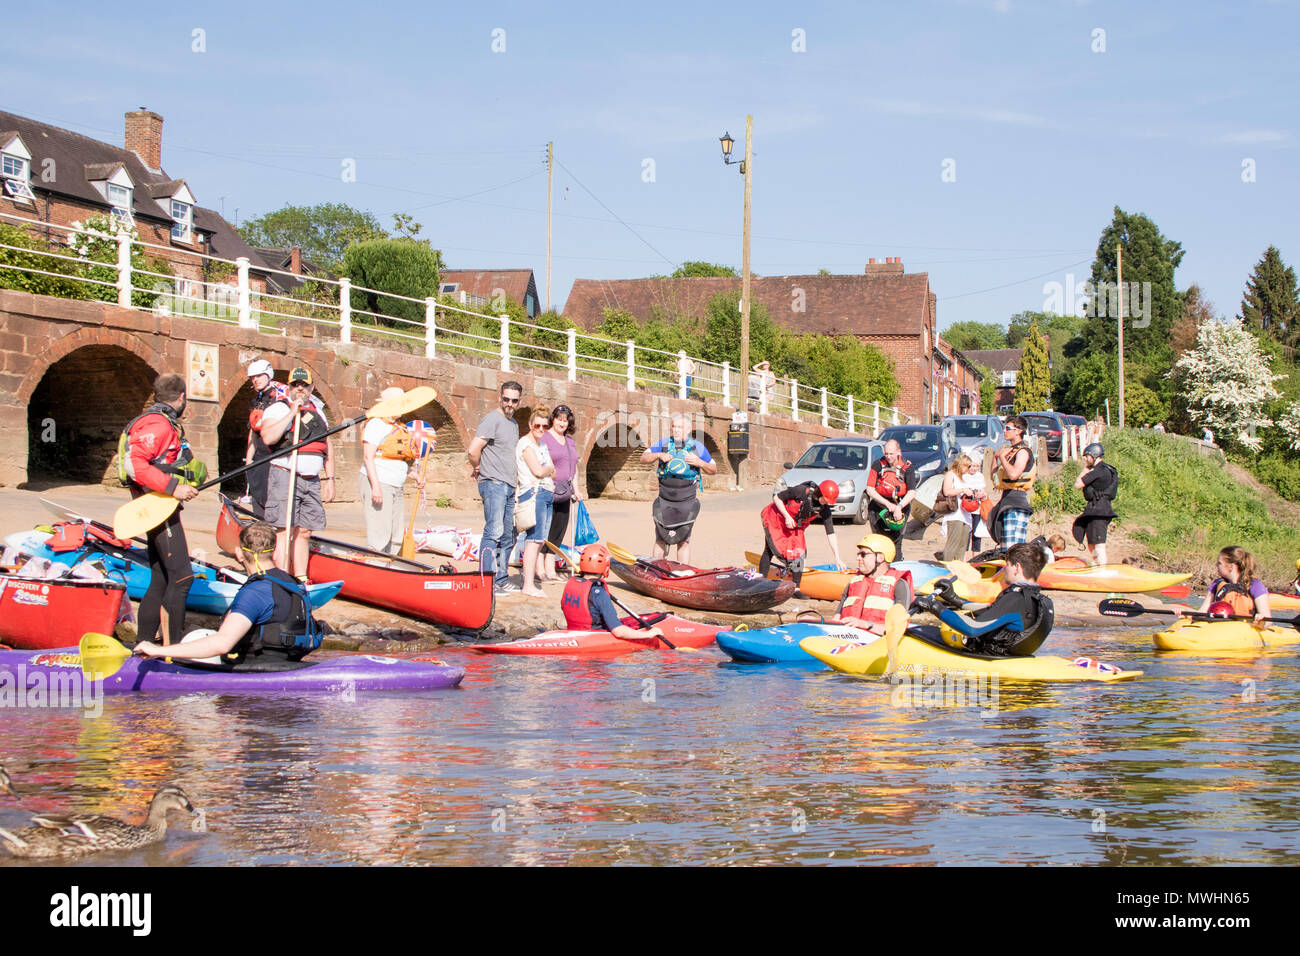 Kanuten und Kajakfahrer auf dem Fluss Severn an Arley, Worcestershire, England, Großbritannien Stockfoto